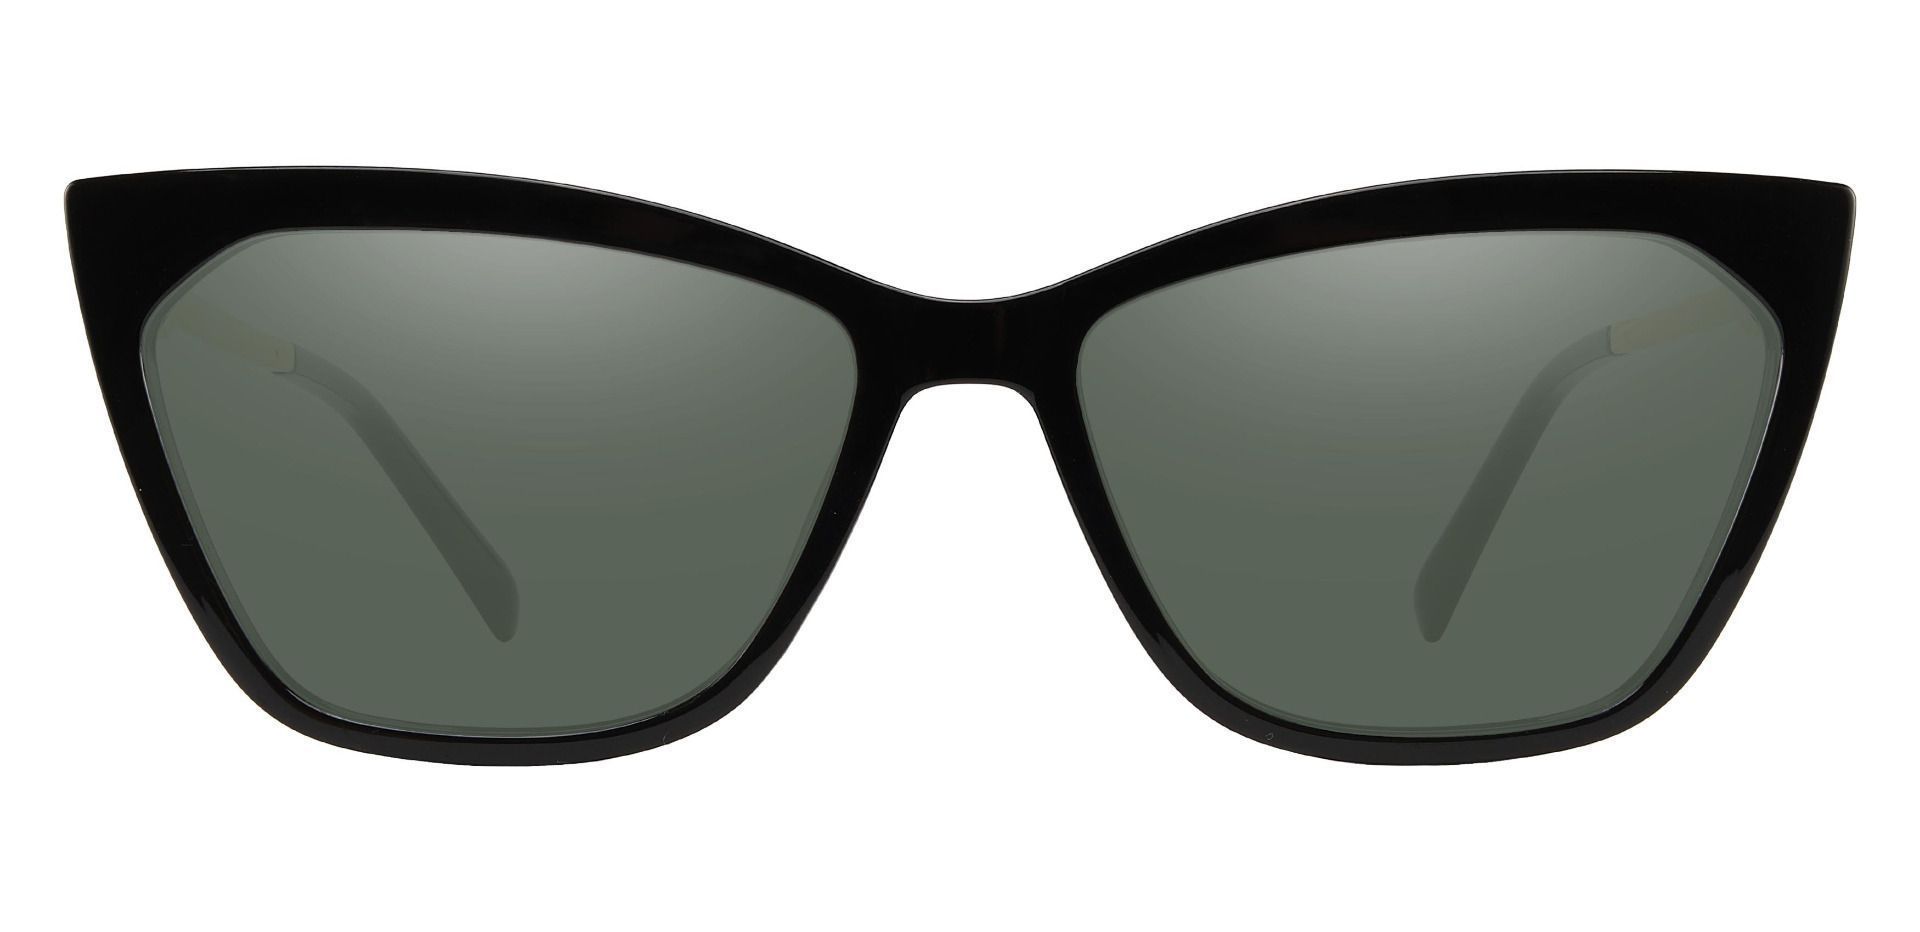 Addison Cat Eye Progressive Sunglasses - Black Frame With Green Lenses